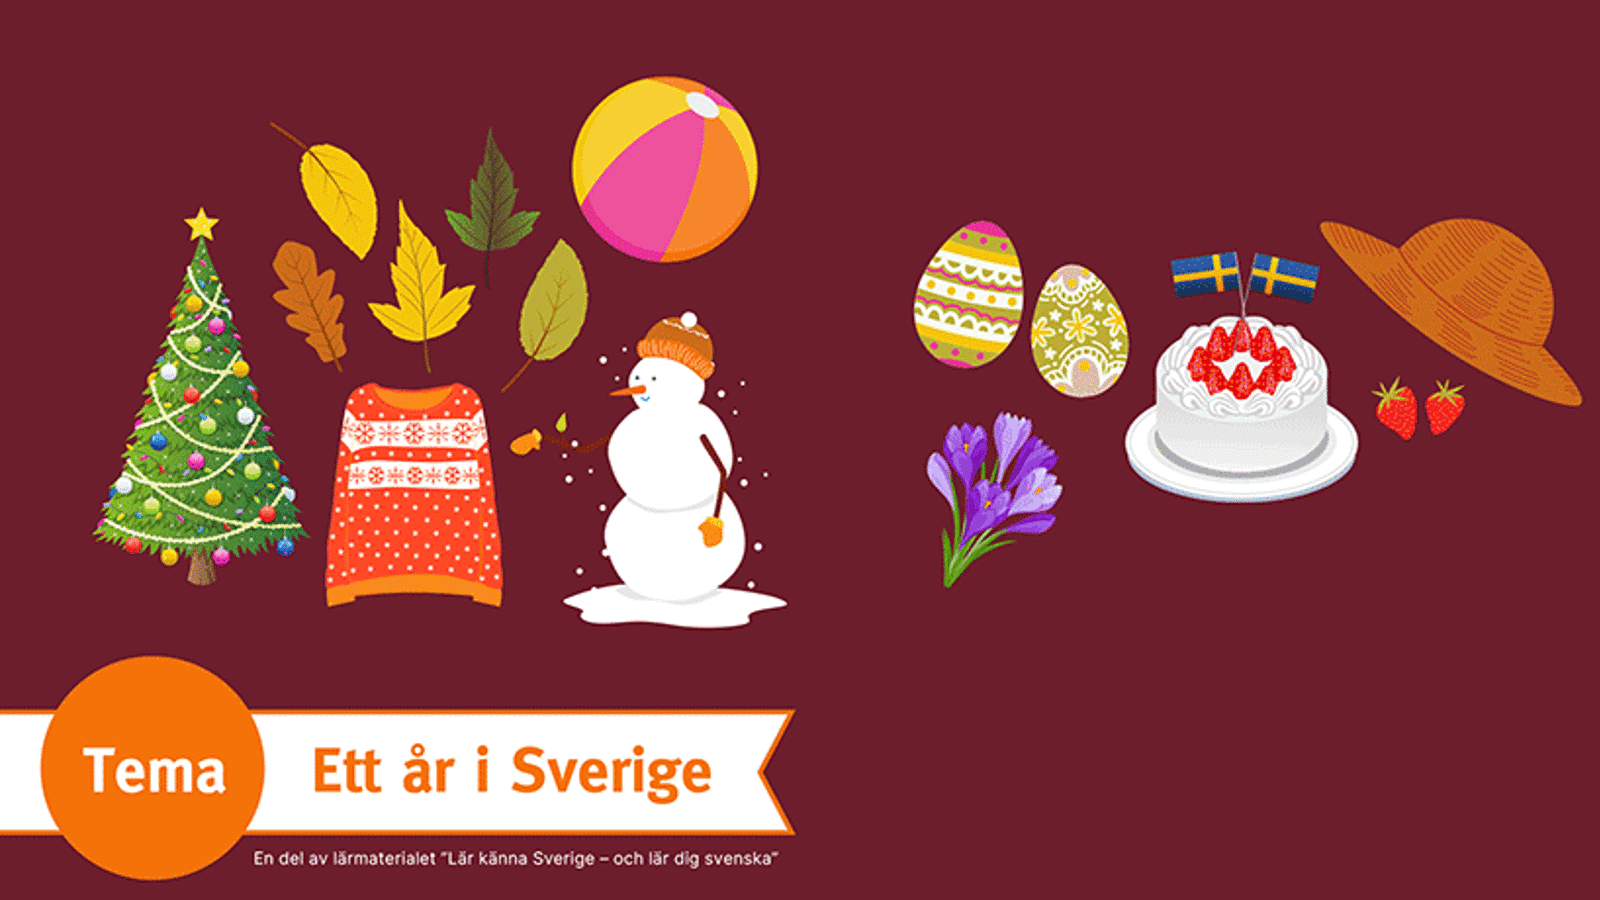 En röd bakgrund med olika saker som kännetecknar olika års- och högtider i Sverige. På den röda bilden är det bland annat en julgran, några höstlöv, två påskägg och en jordgubbstårta.